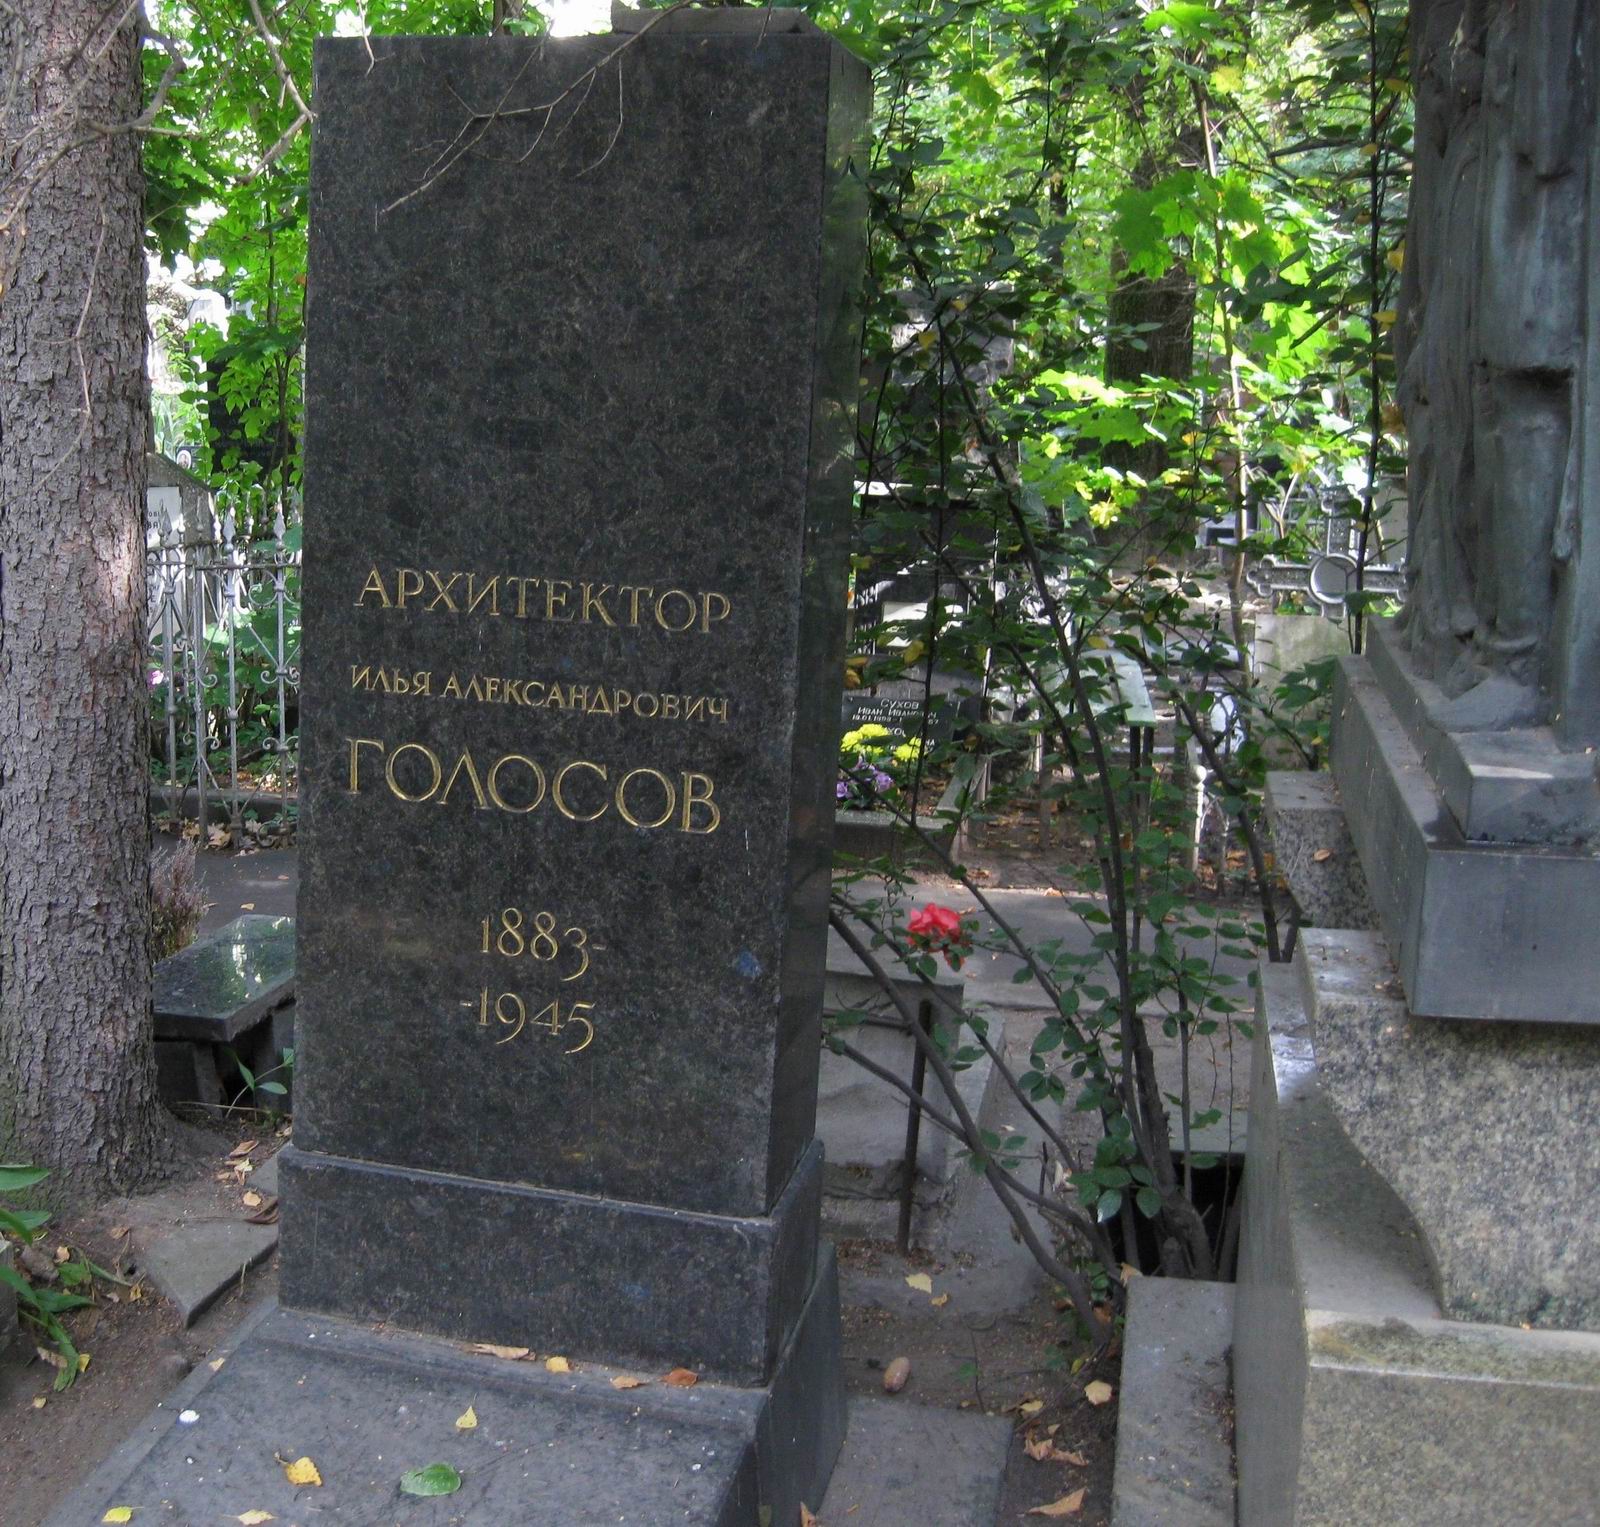 Памятник на могиле Голосова И.А. (1883-1945), арх. В.Калинин, на Новодевичьем кладбище (2-30-18).